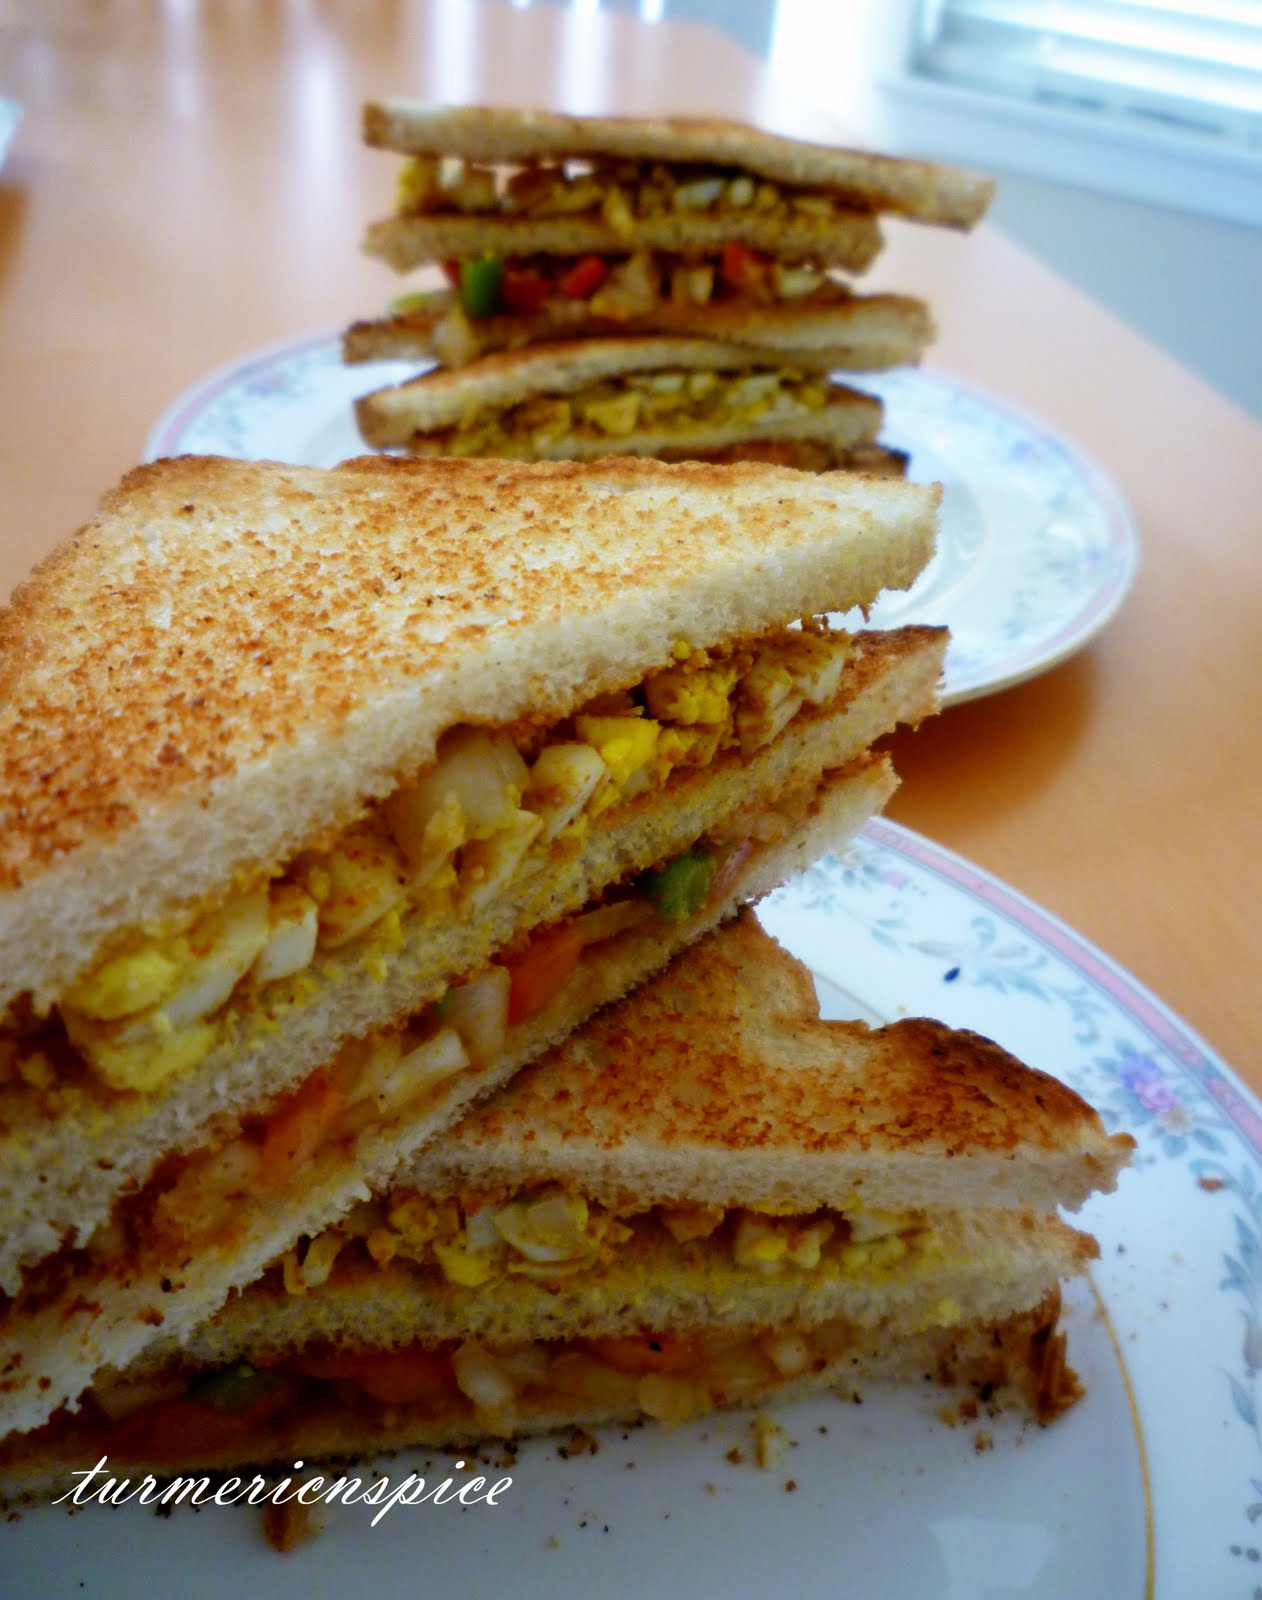 Turmeric n spice: Club Sandwich